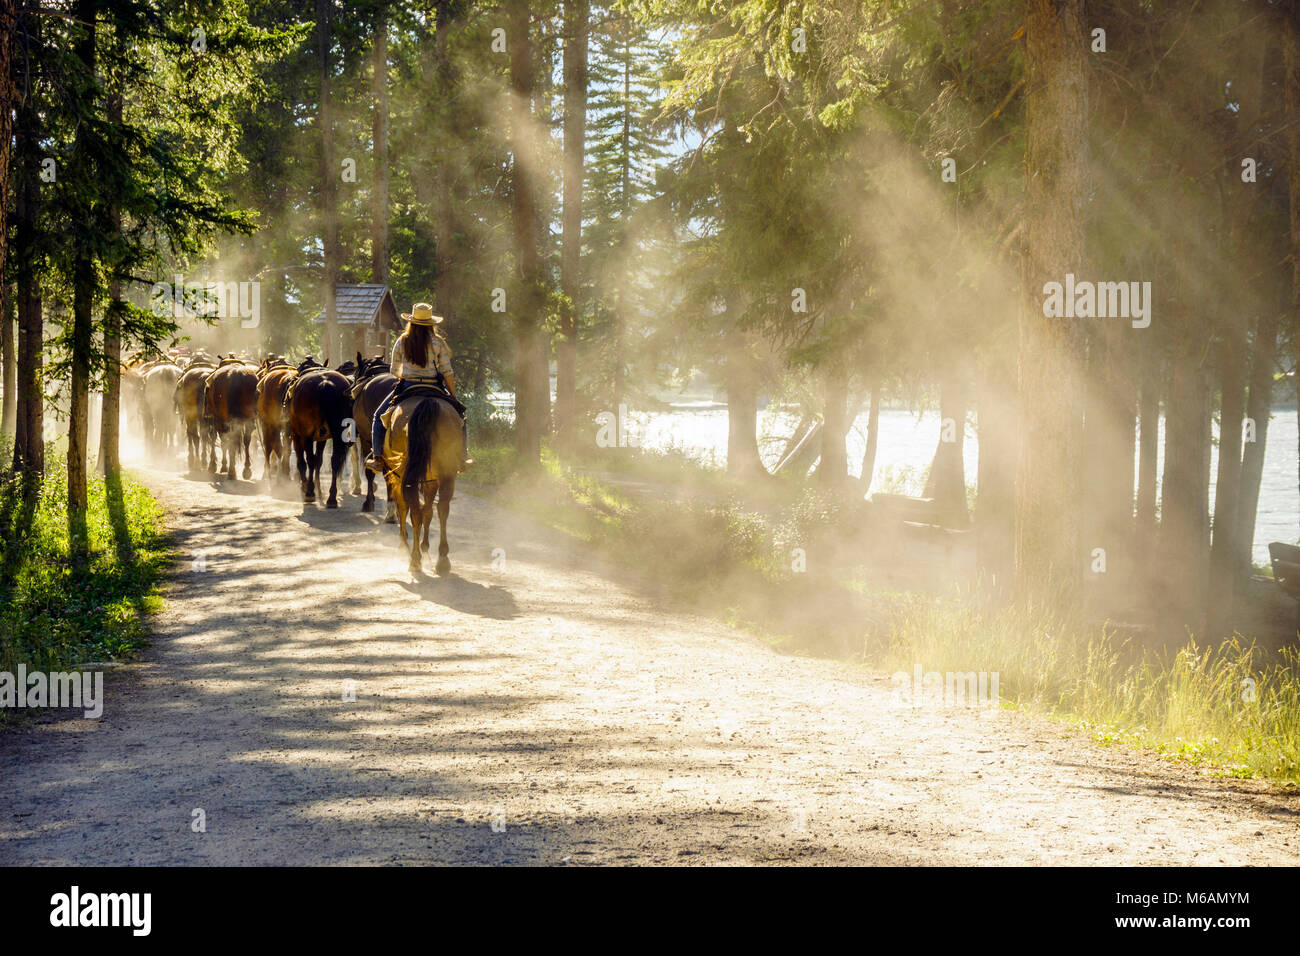 Manada de caballos, seguida por la mujer en el polvoriento camino forestal, Parque Nacional de Banff, Alberta, Canadá Foto de stock